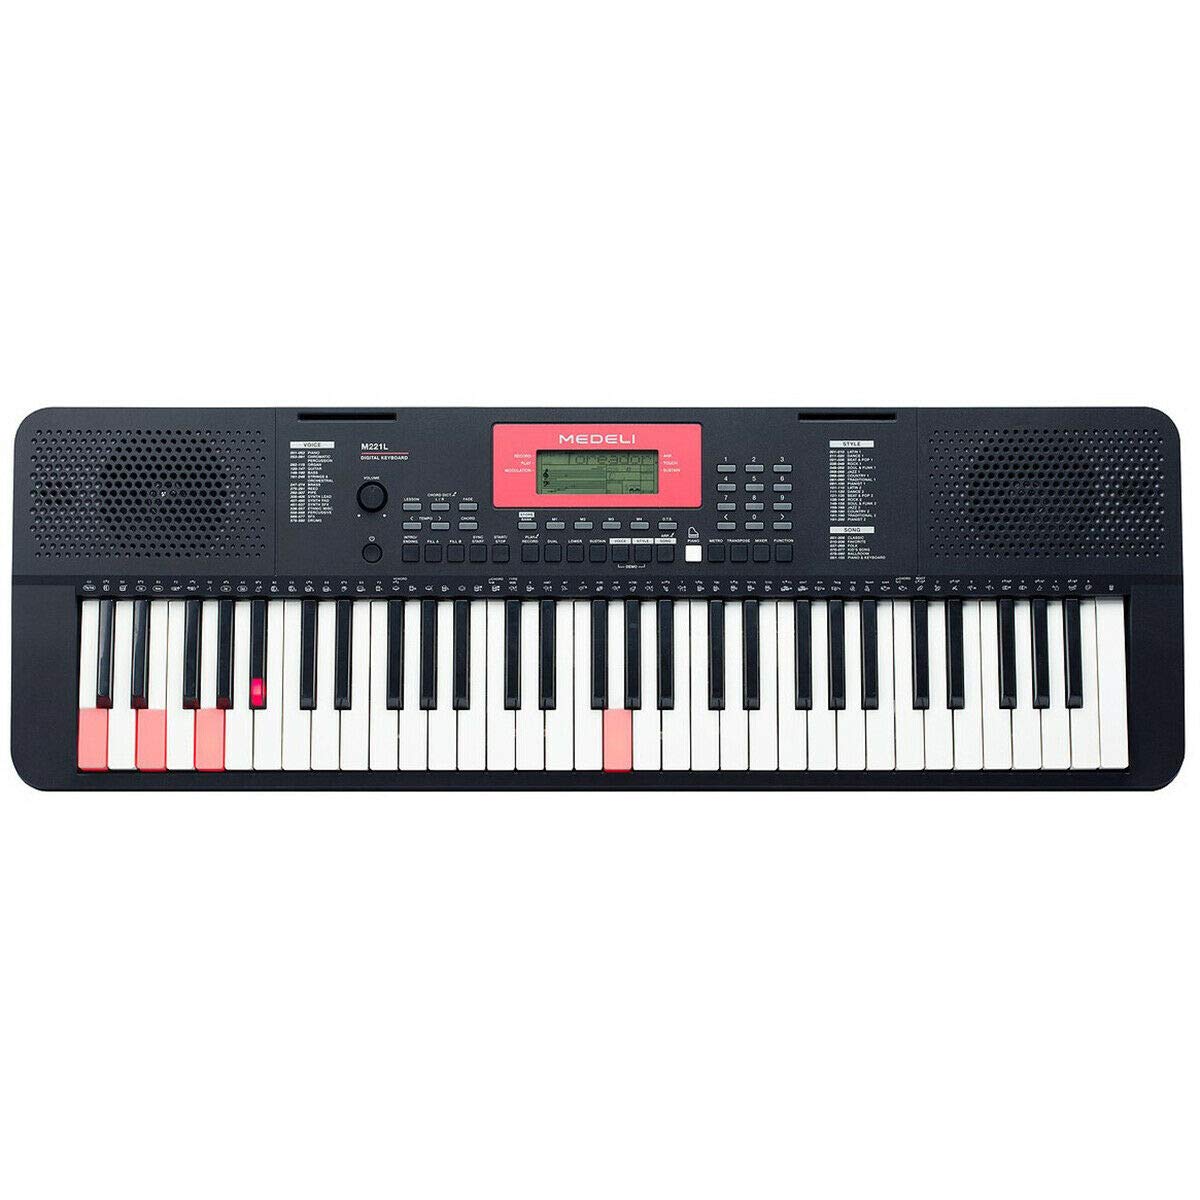 Medeli M221L 61 note keyboard